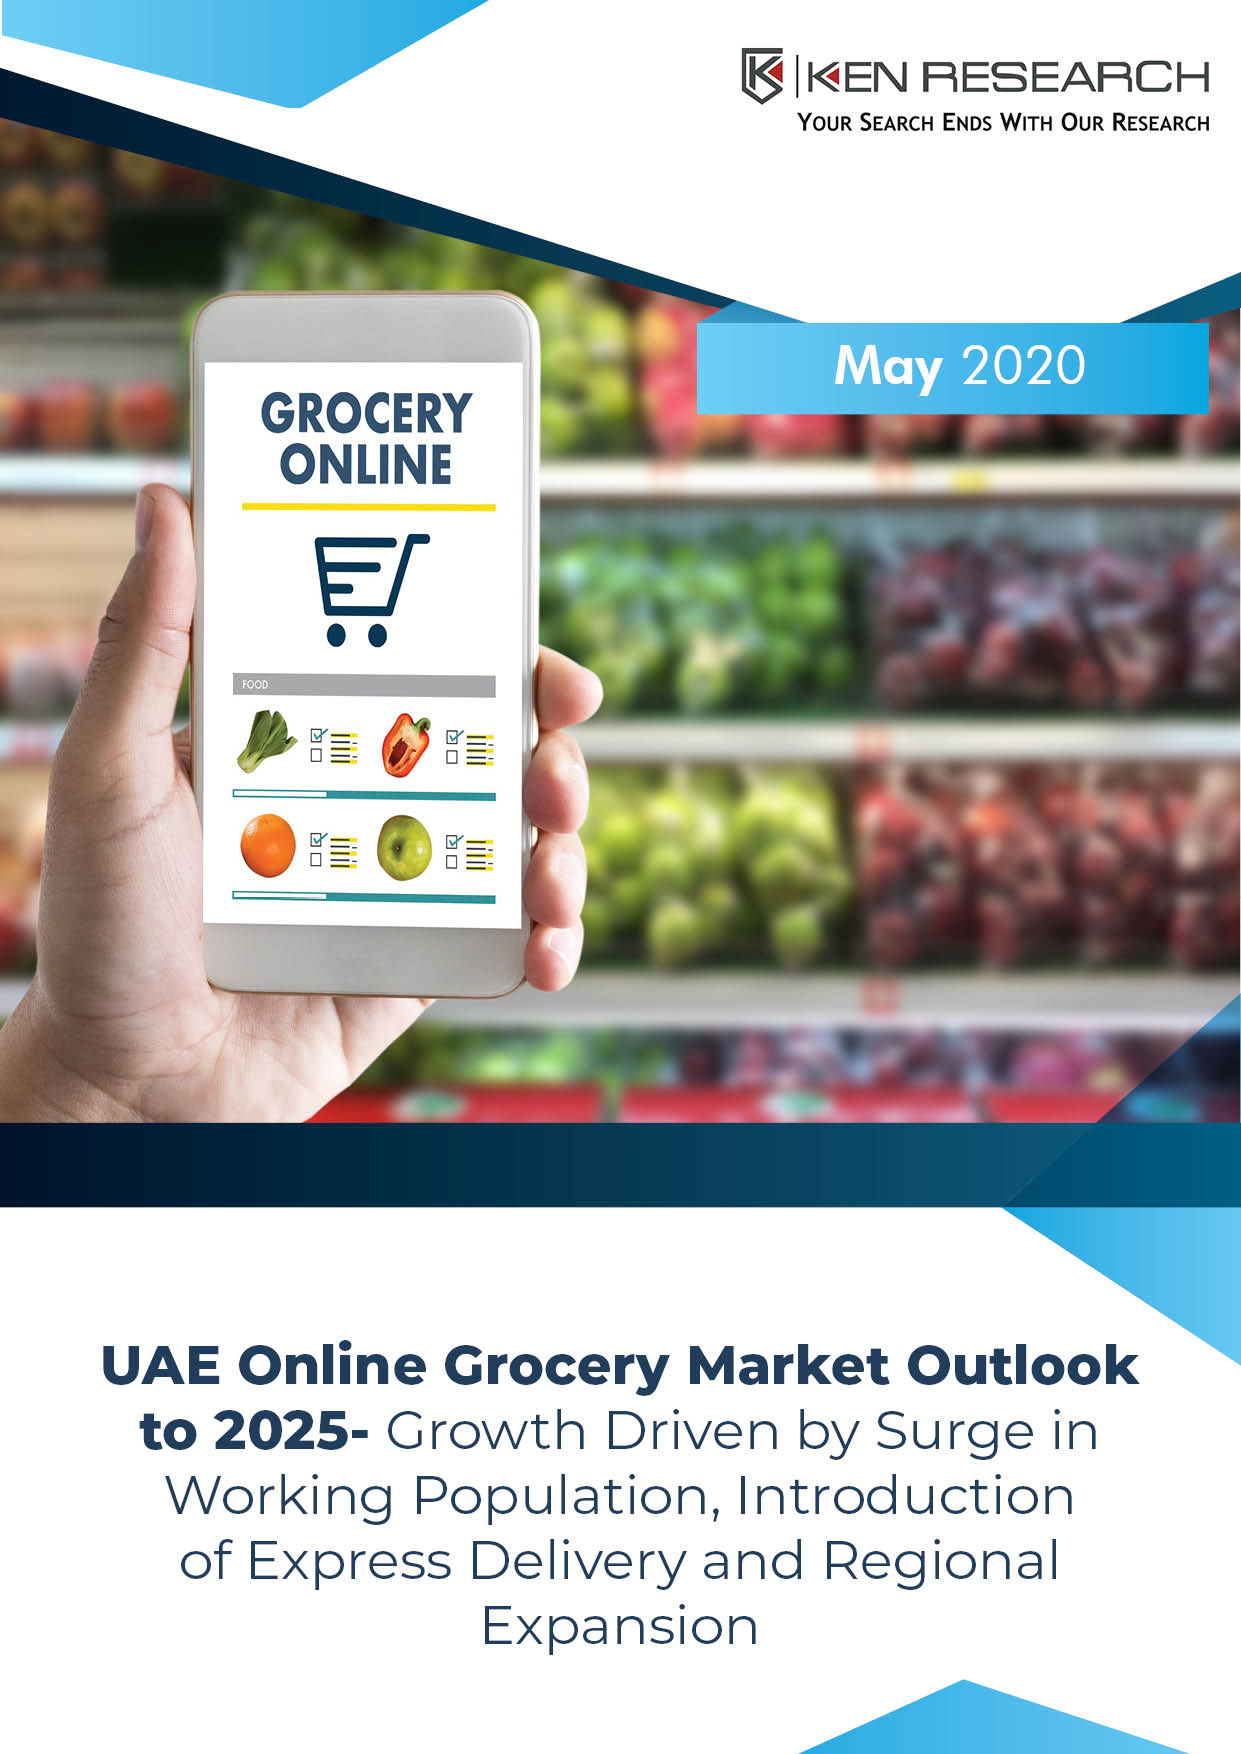 UAE Online Grocery Industry